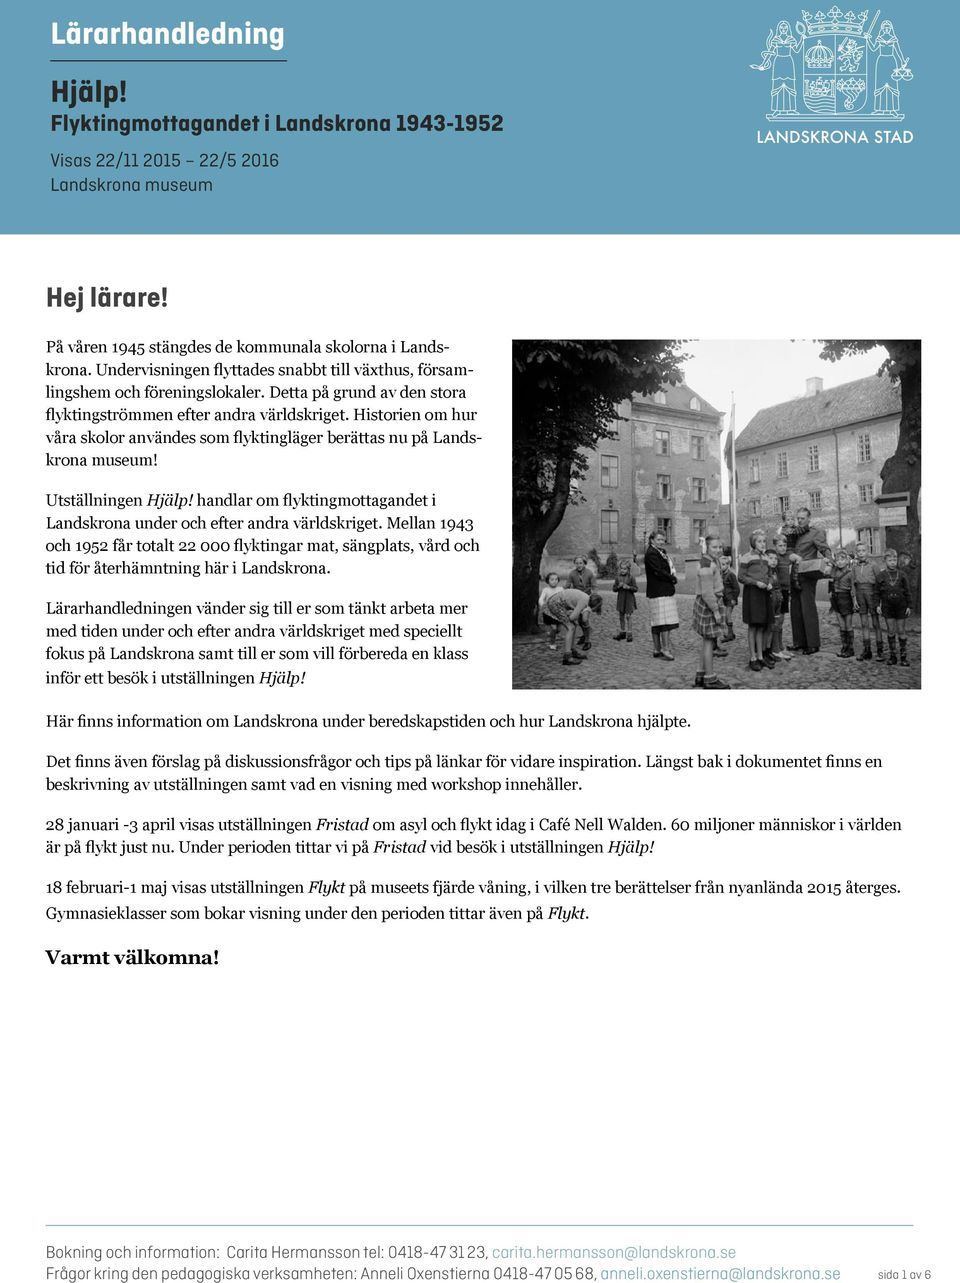 Historien om hur våra skolor användes som flyktingläger berättas nu på Landskrona museum! Utställningen Hjälp! handlar om flyktingmottagandet i Landskrona under och efter andra världskriget.